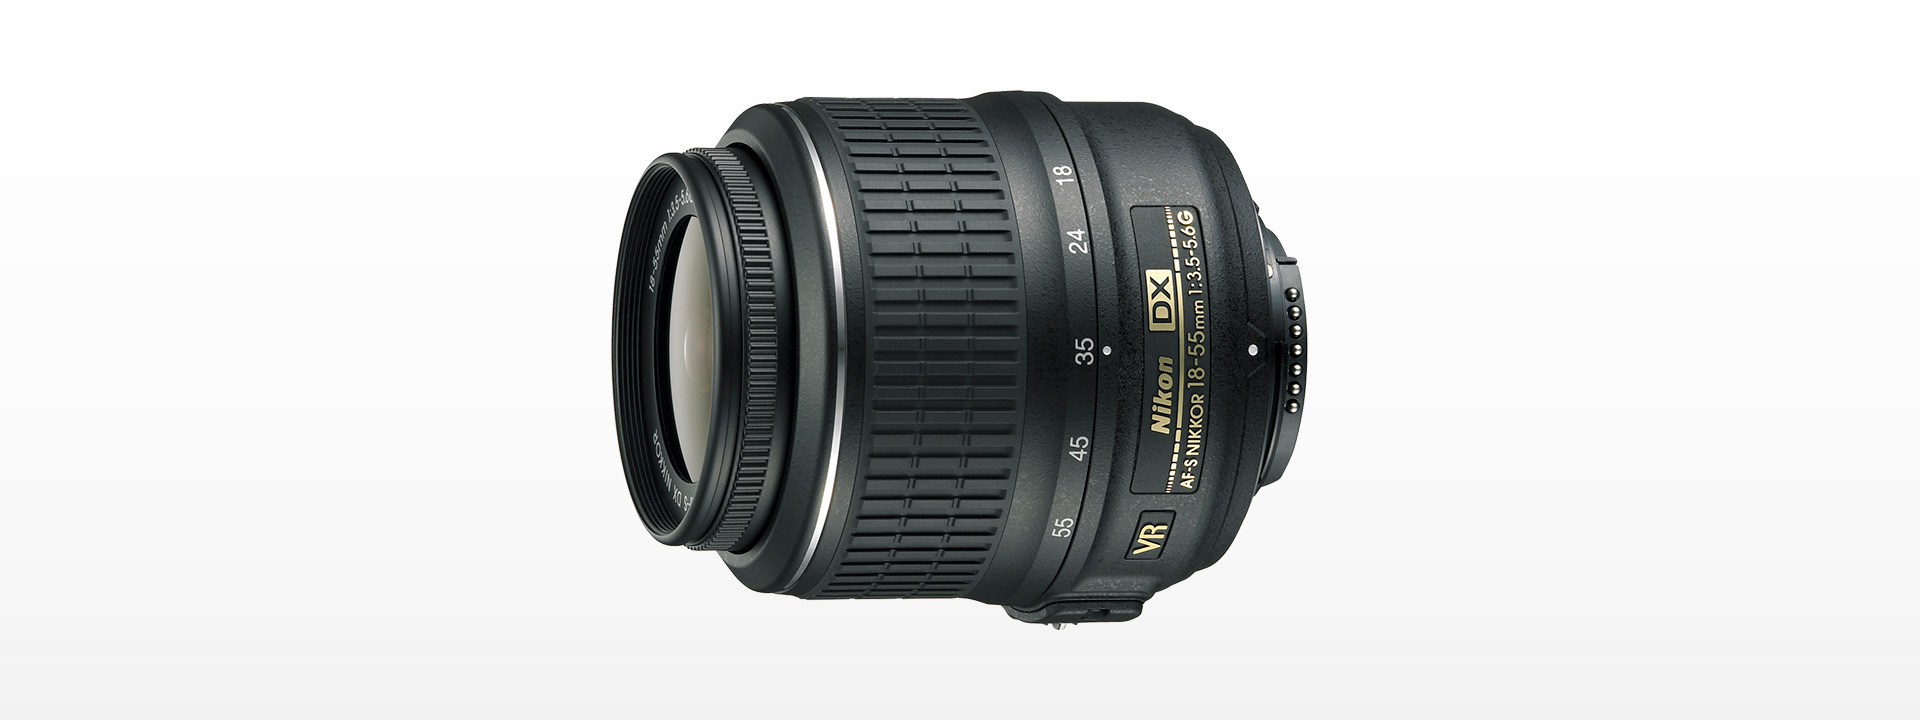 Nikon AF-S DX 18-55mm F3.5-5.6G VR ii